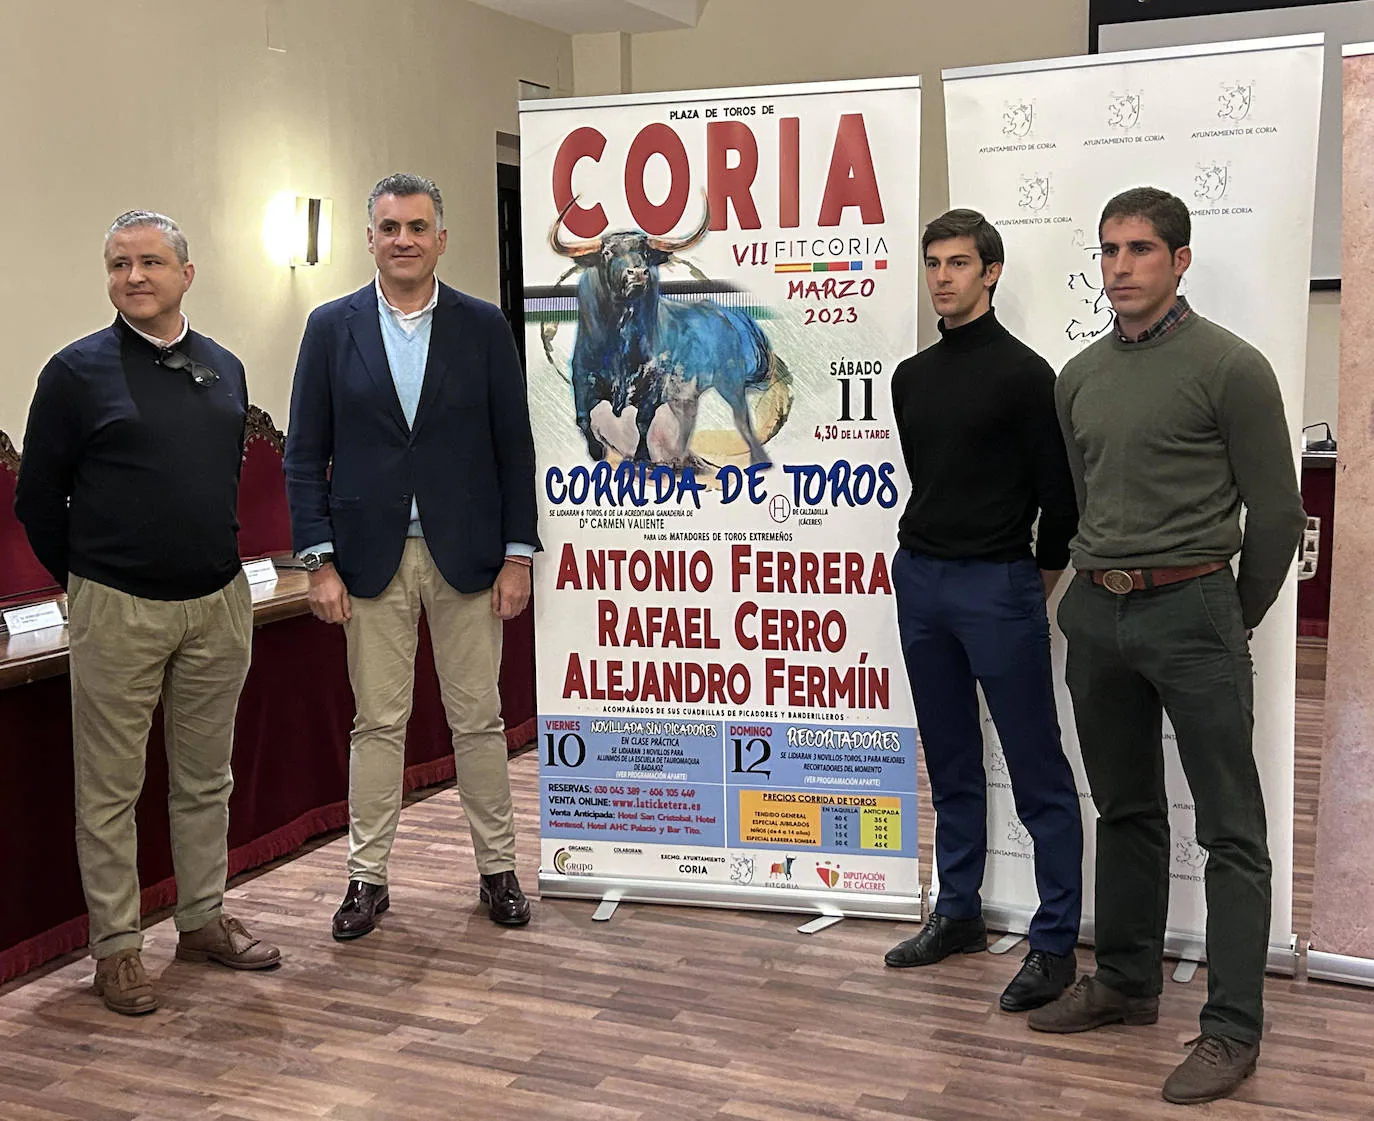 Antonio Ferrera, Rafael Cerro y Alejandro Fermín conforman el cartel taurino de la VII Feria Internacional del Toro